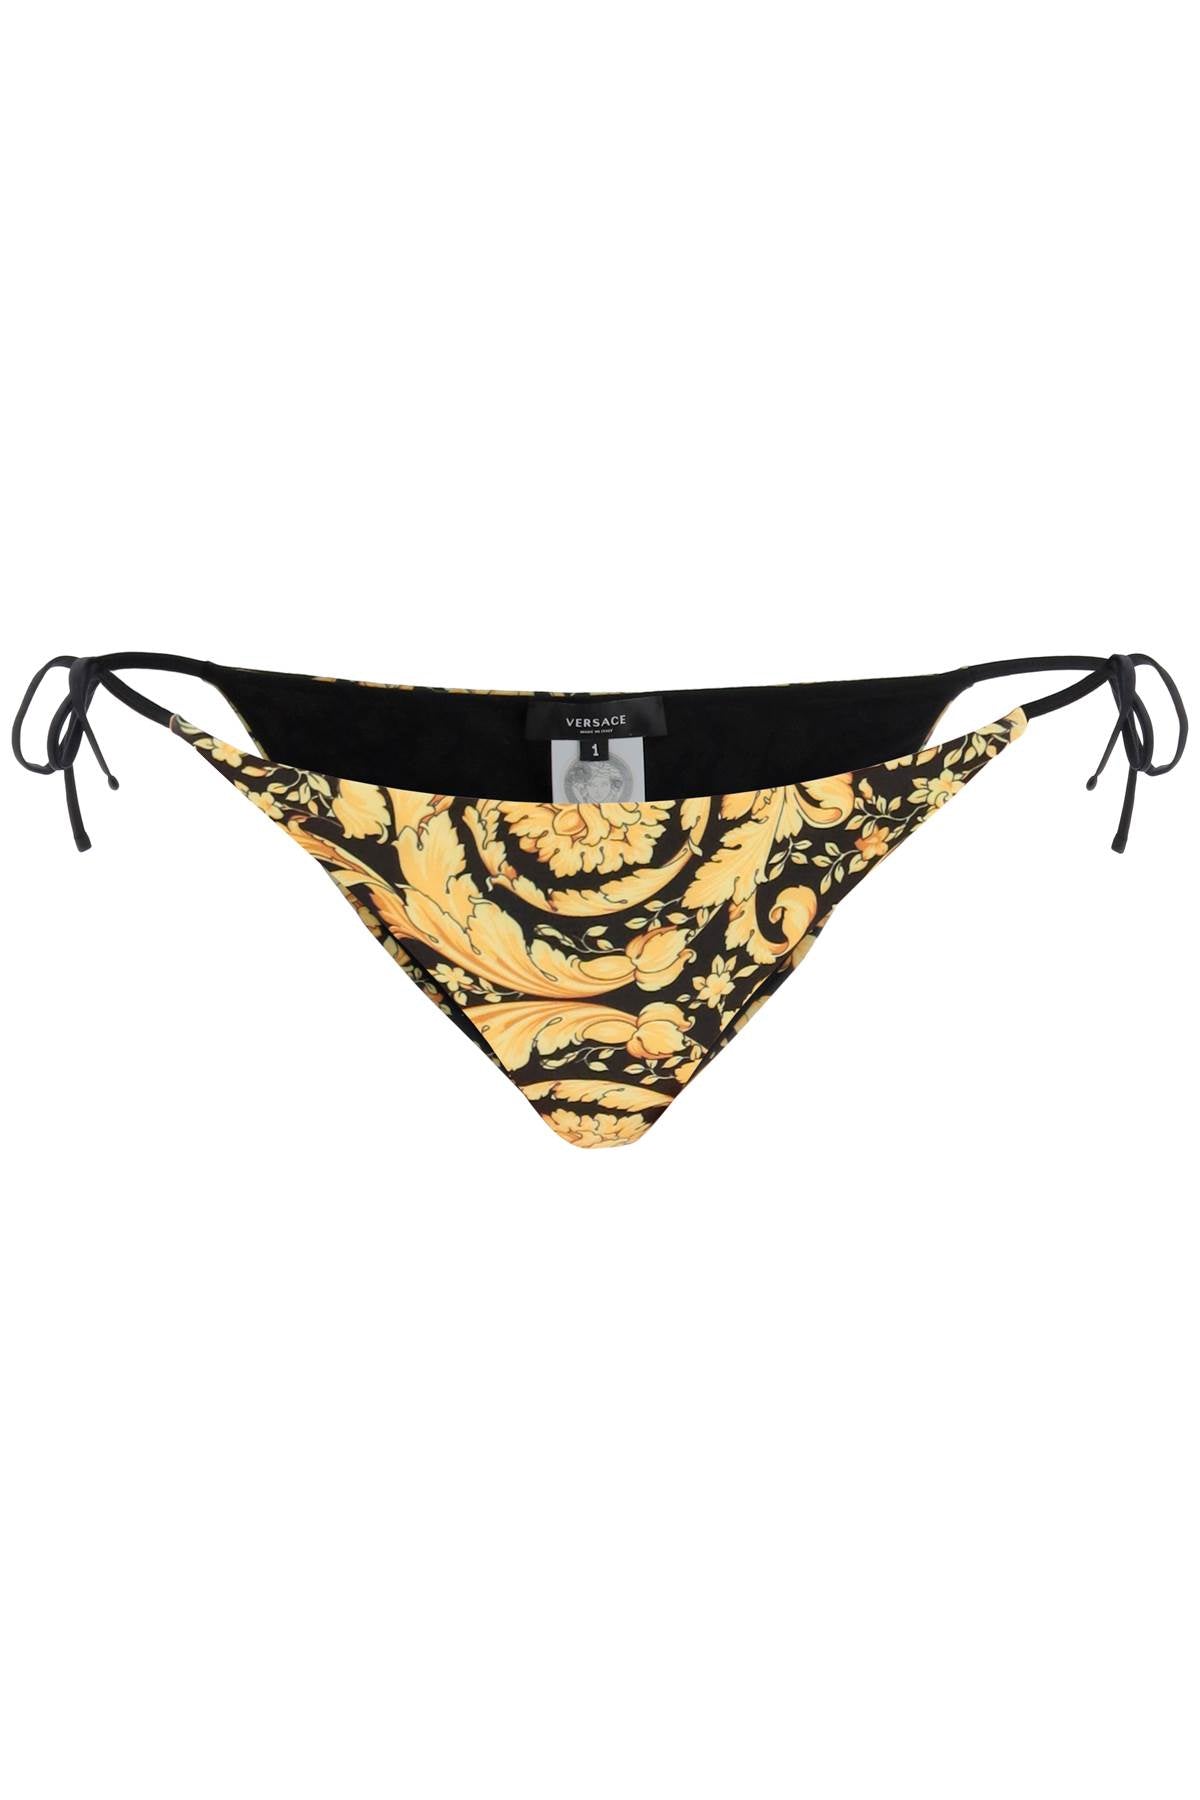 Versace TANGA MARE DONNA - Bikini bottoms - nero/oro/gold-coloured